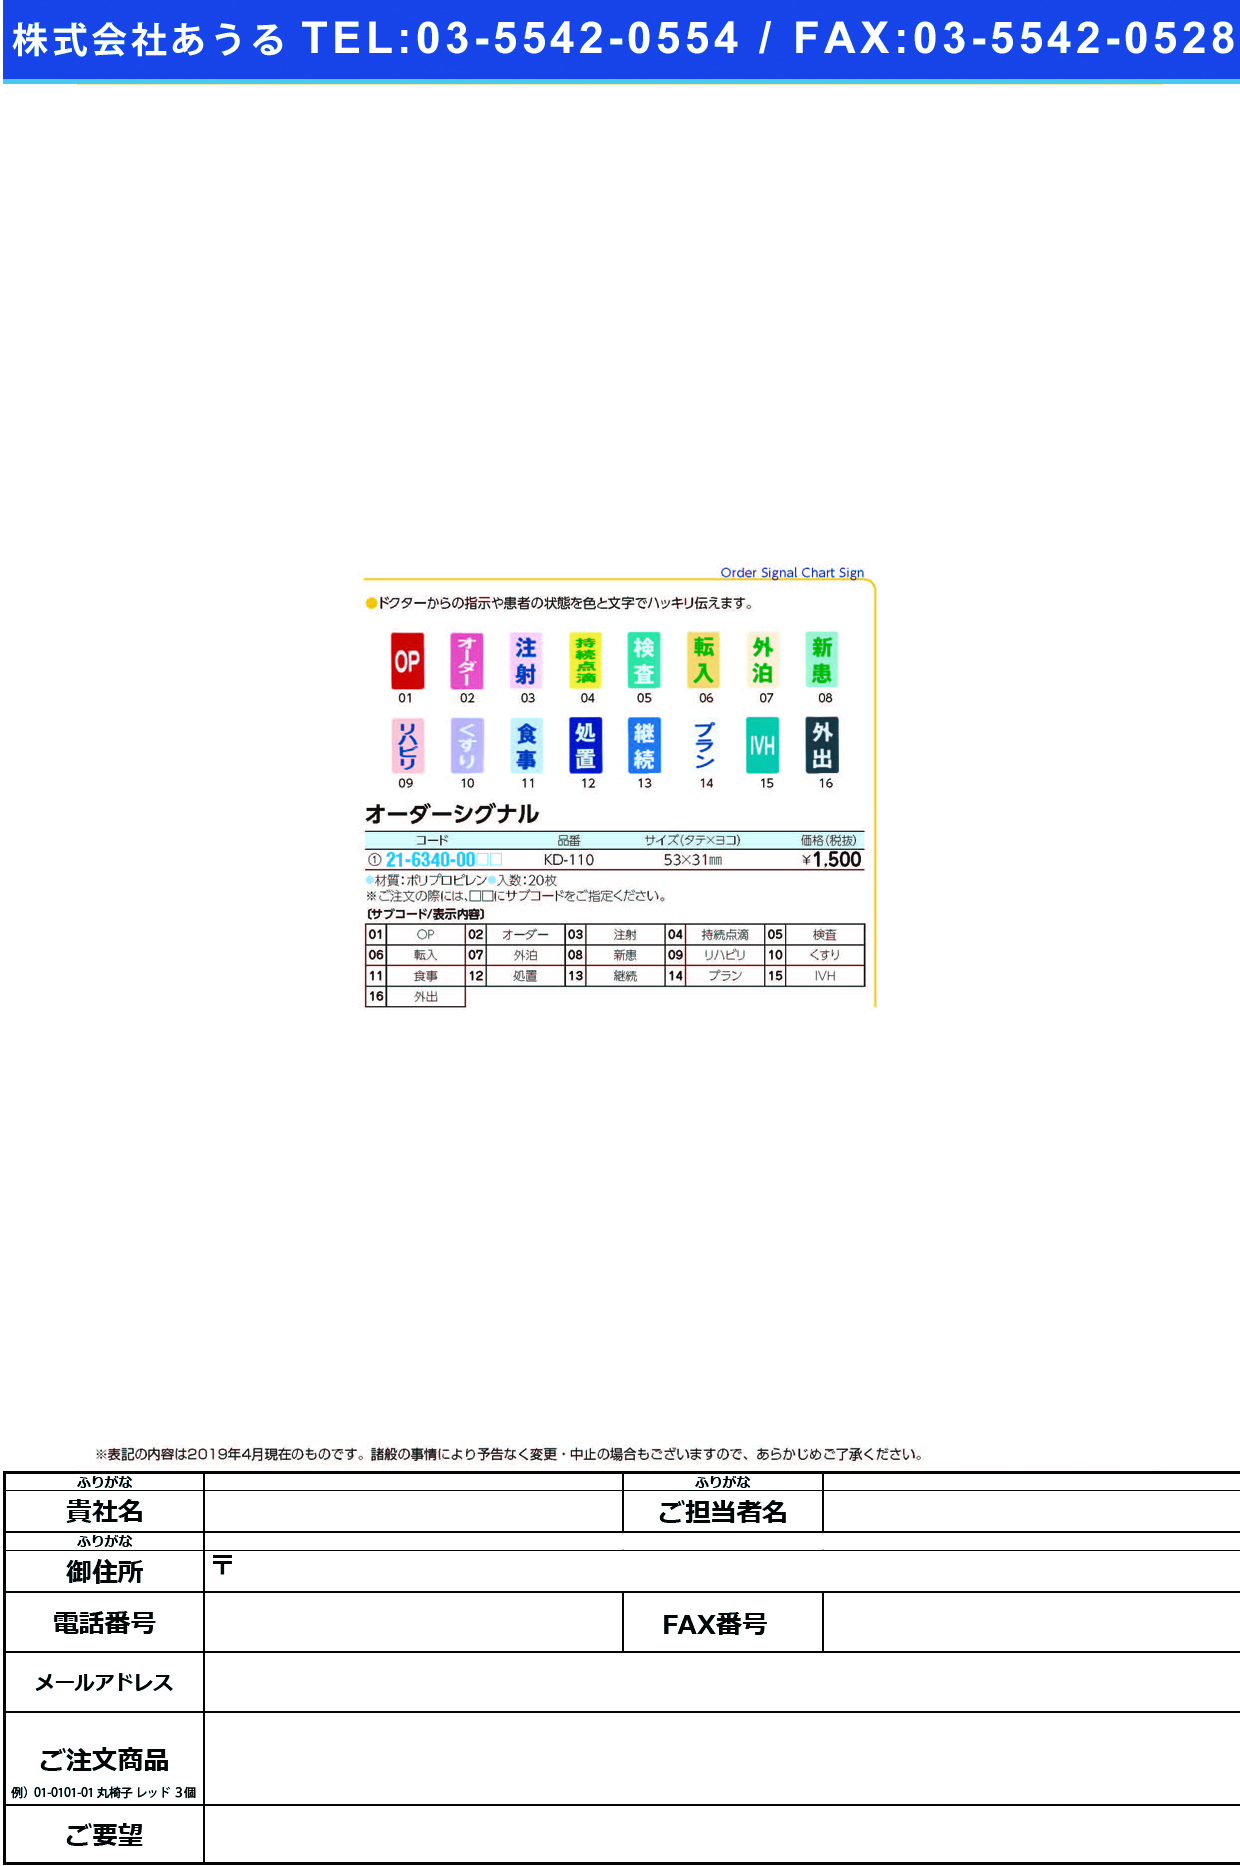 (21-6340-00)オーダーシグナル KD-110(20ﾏｲｲﾘ) ｵｰﾀﾞｰｼｸﾞﾅﾙ くすり(ケルン)【1袋単位】【2019年カタログ商品】